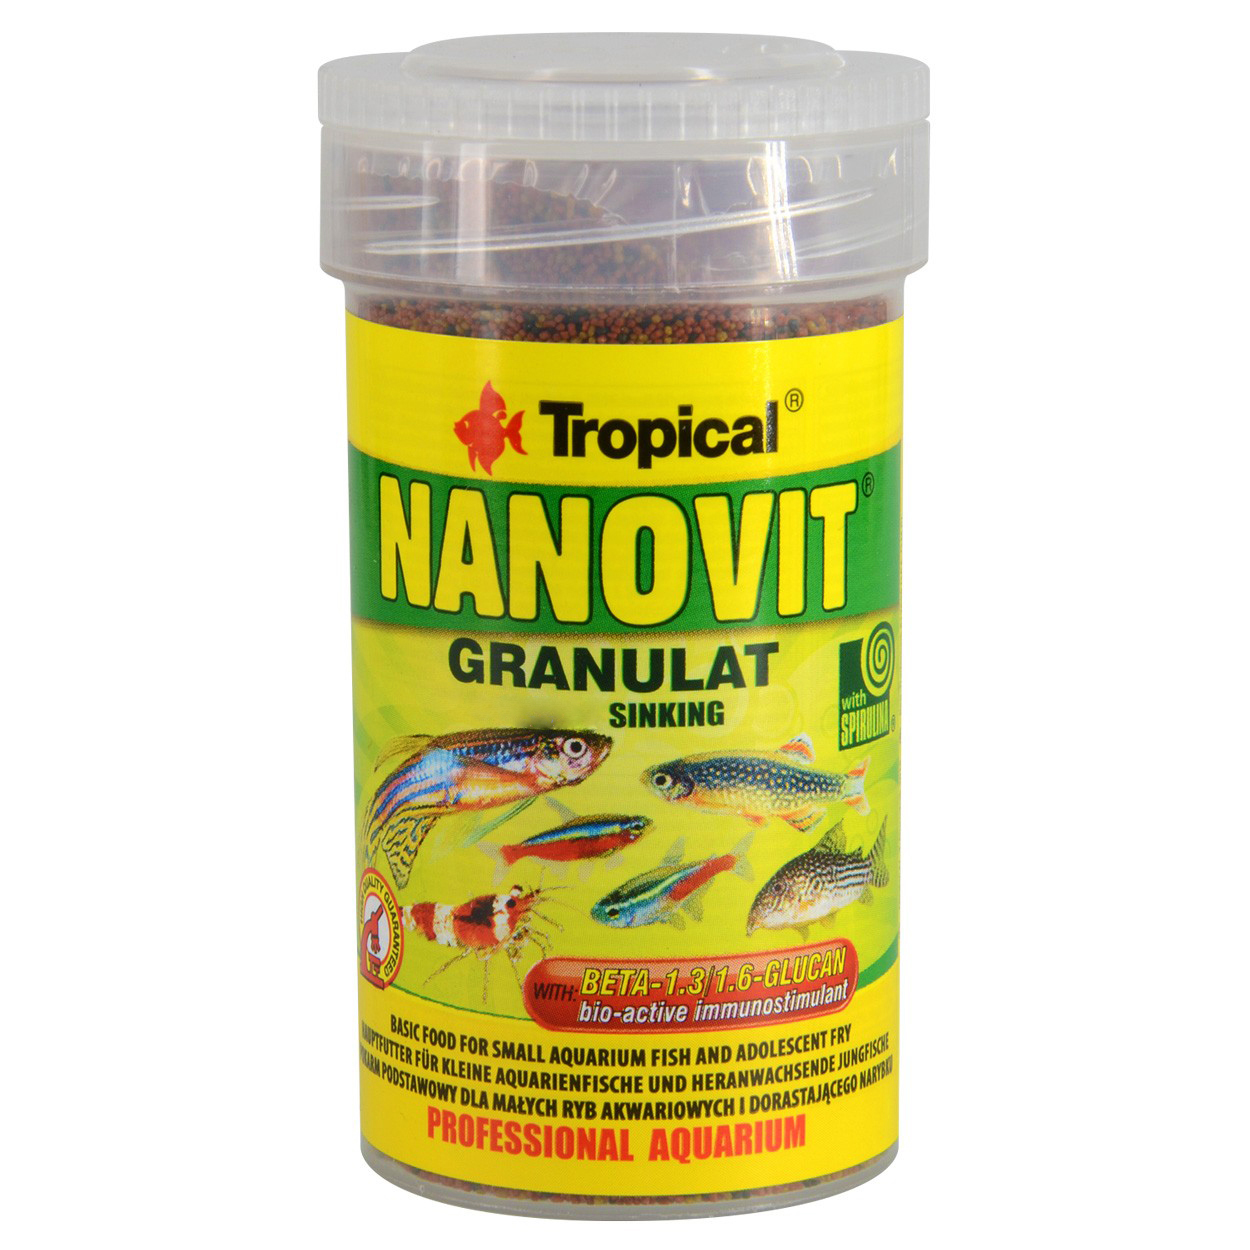 نقد و بررسی غذای ماهی تروپیکال مدل Nanovit Granulat اسپیرولینا وزن 65 گرم توسط خریداران